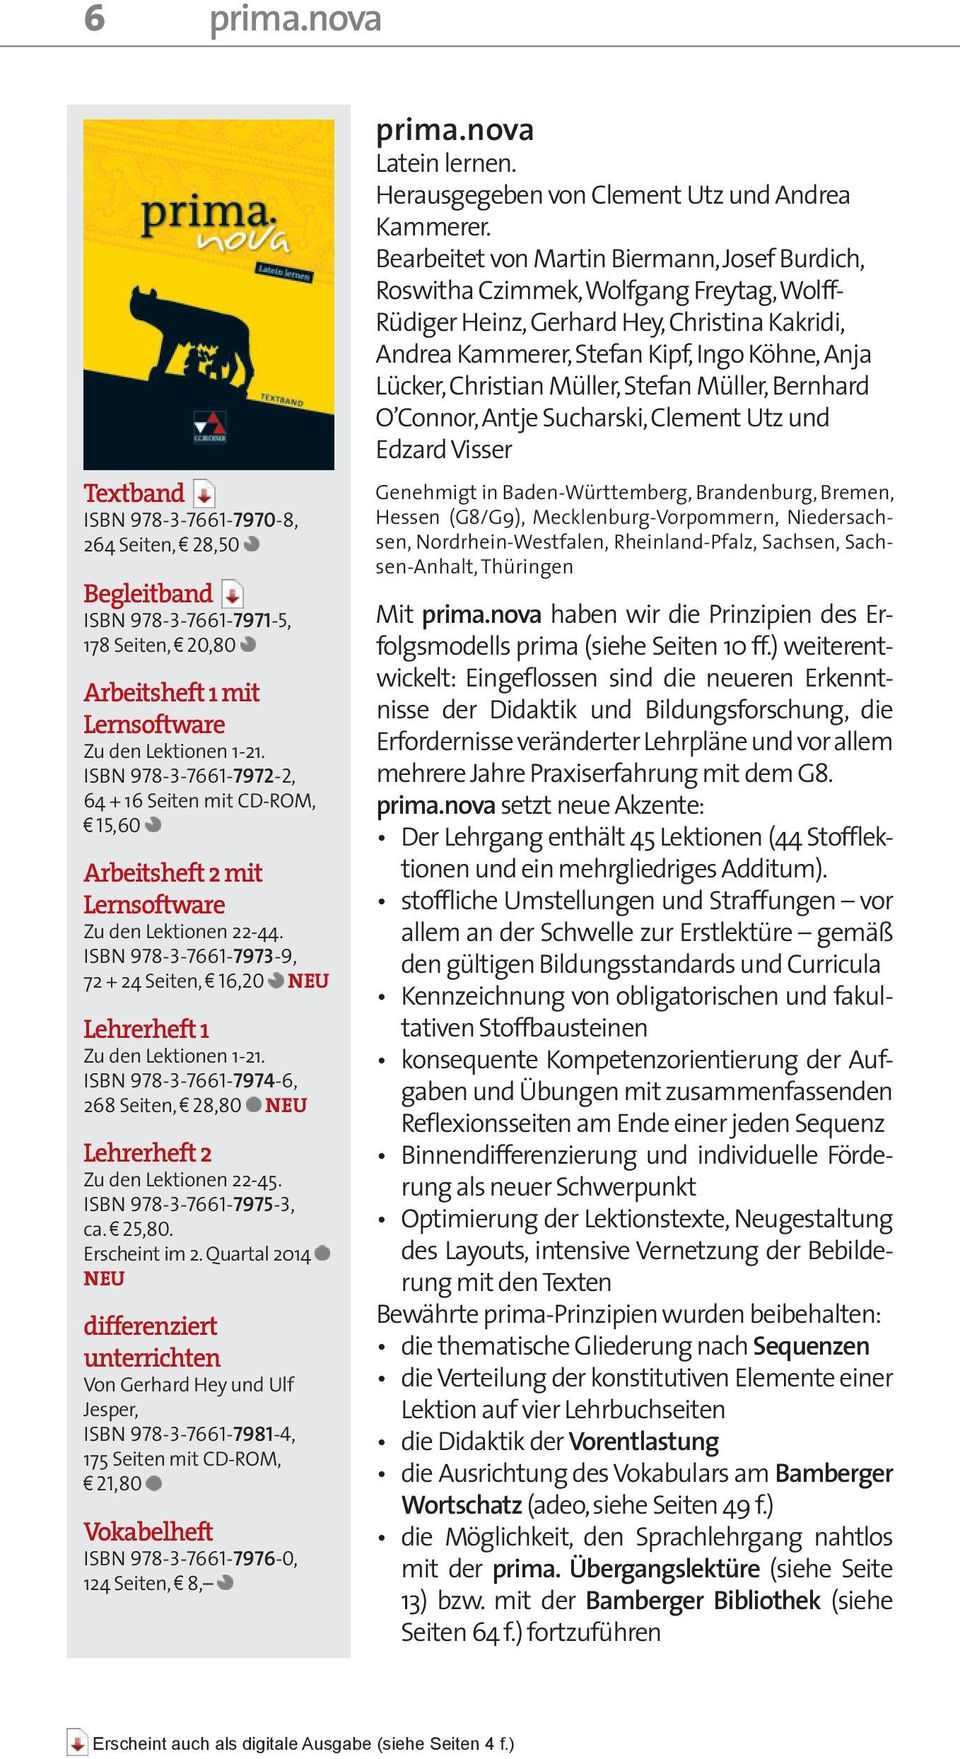 ISBN 978-3-7661-7974-6, 268 Seiten, 28,80 NEU Lehrerheft 2 Zu den Lektionen 22-45. ISBN 978-3-7661-7975-3, ca. 25,80. Erscheint im 2.